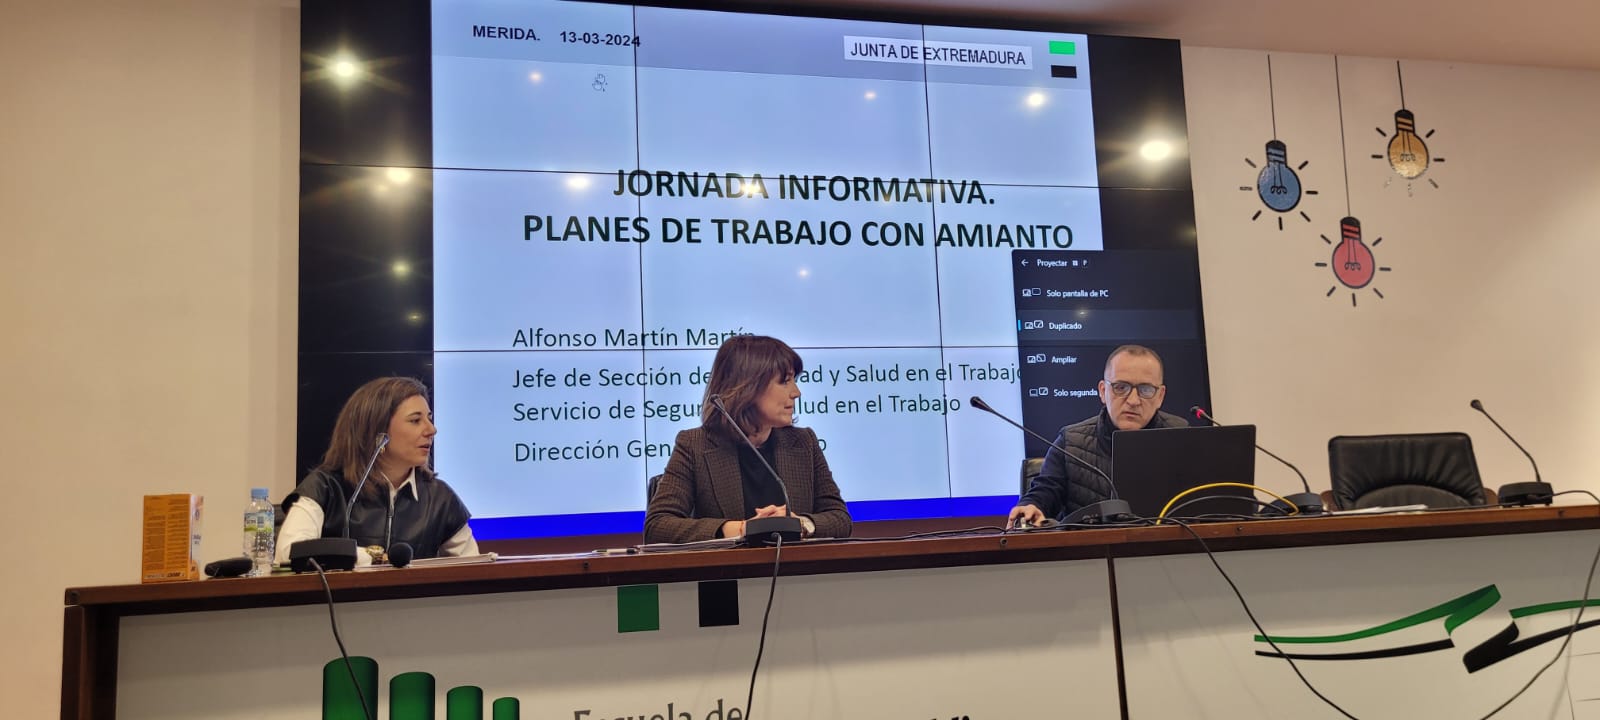 Image 1 of article La Junta informa de las ayudas y condiciones de seguridad para los trabajos de desamiantado en las I Jornadas sobre Planes de Amianto en Extremadura